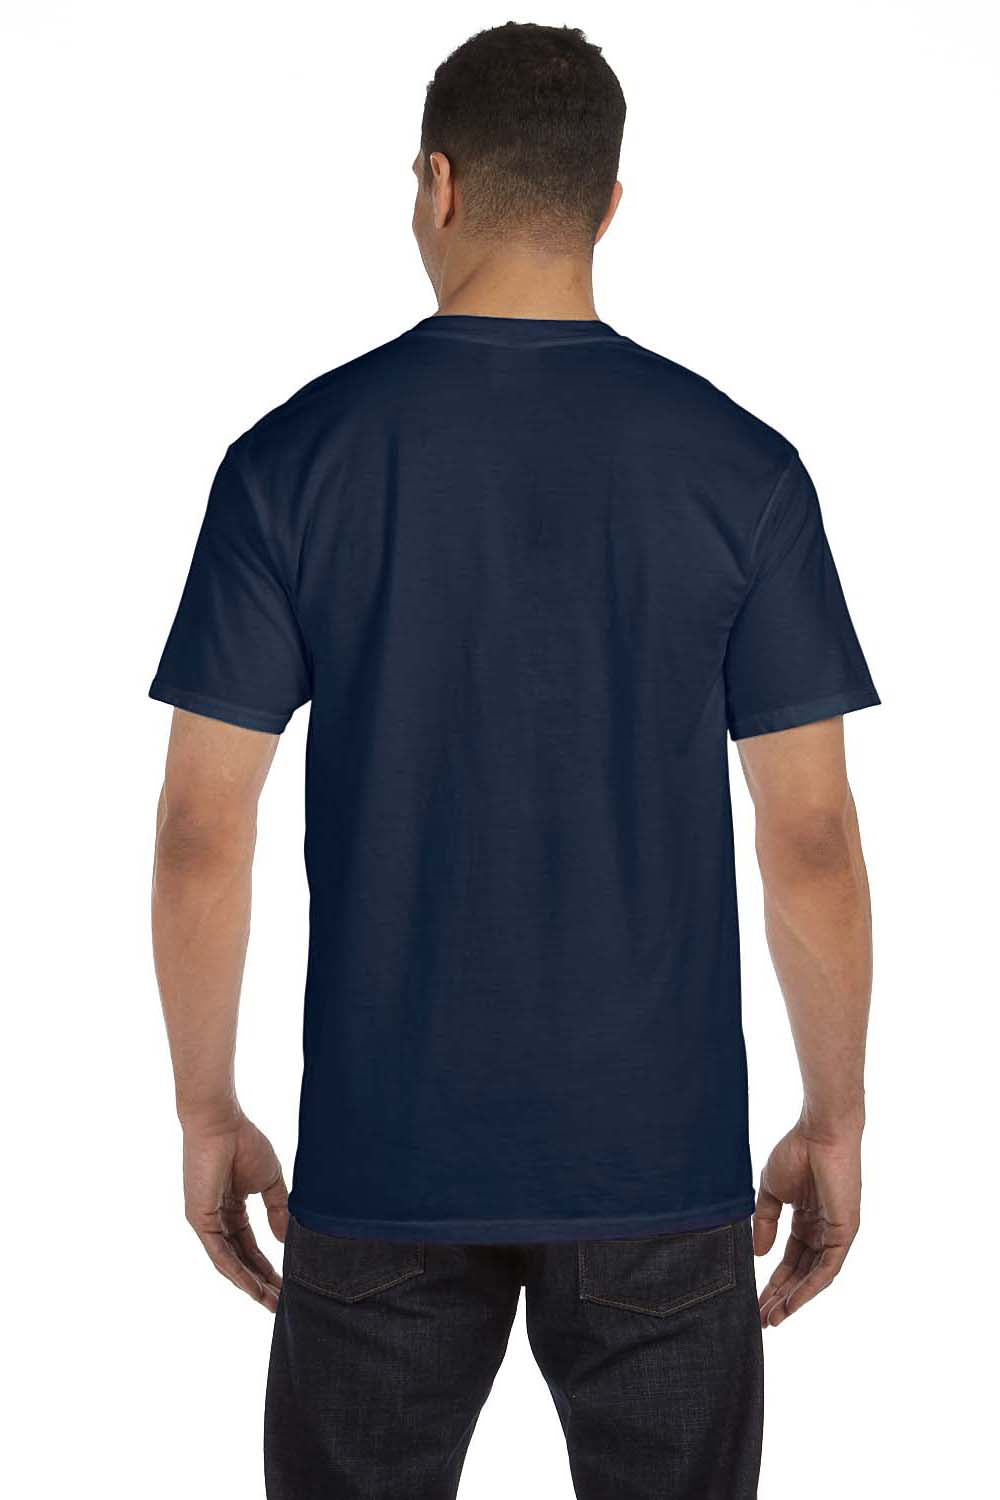 Comfort Colors Mens Short Sleeve Crewneck T-Shirt w/ Pocket 6030CC ...